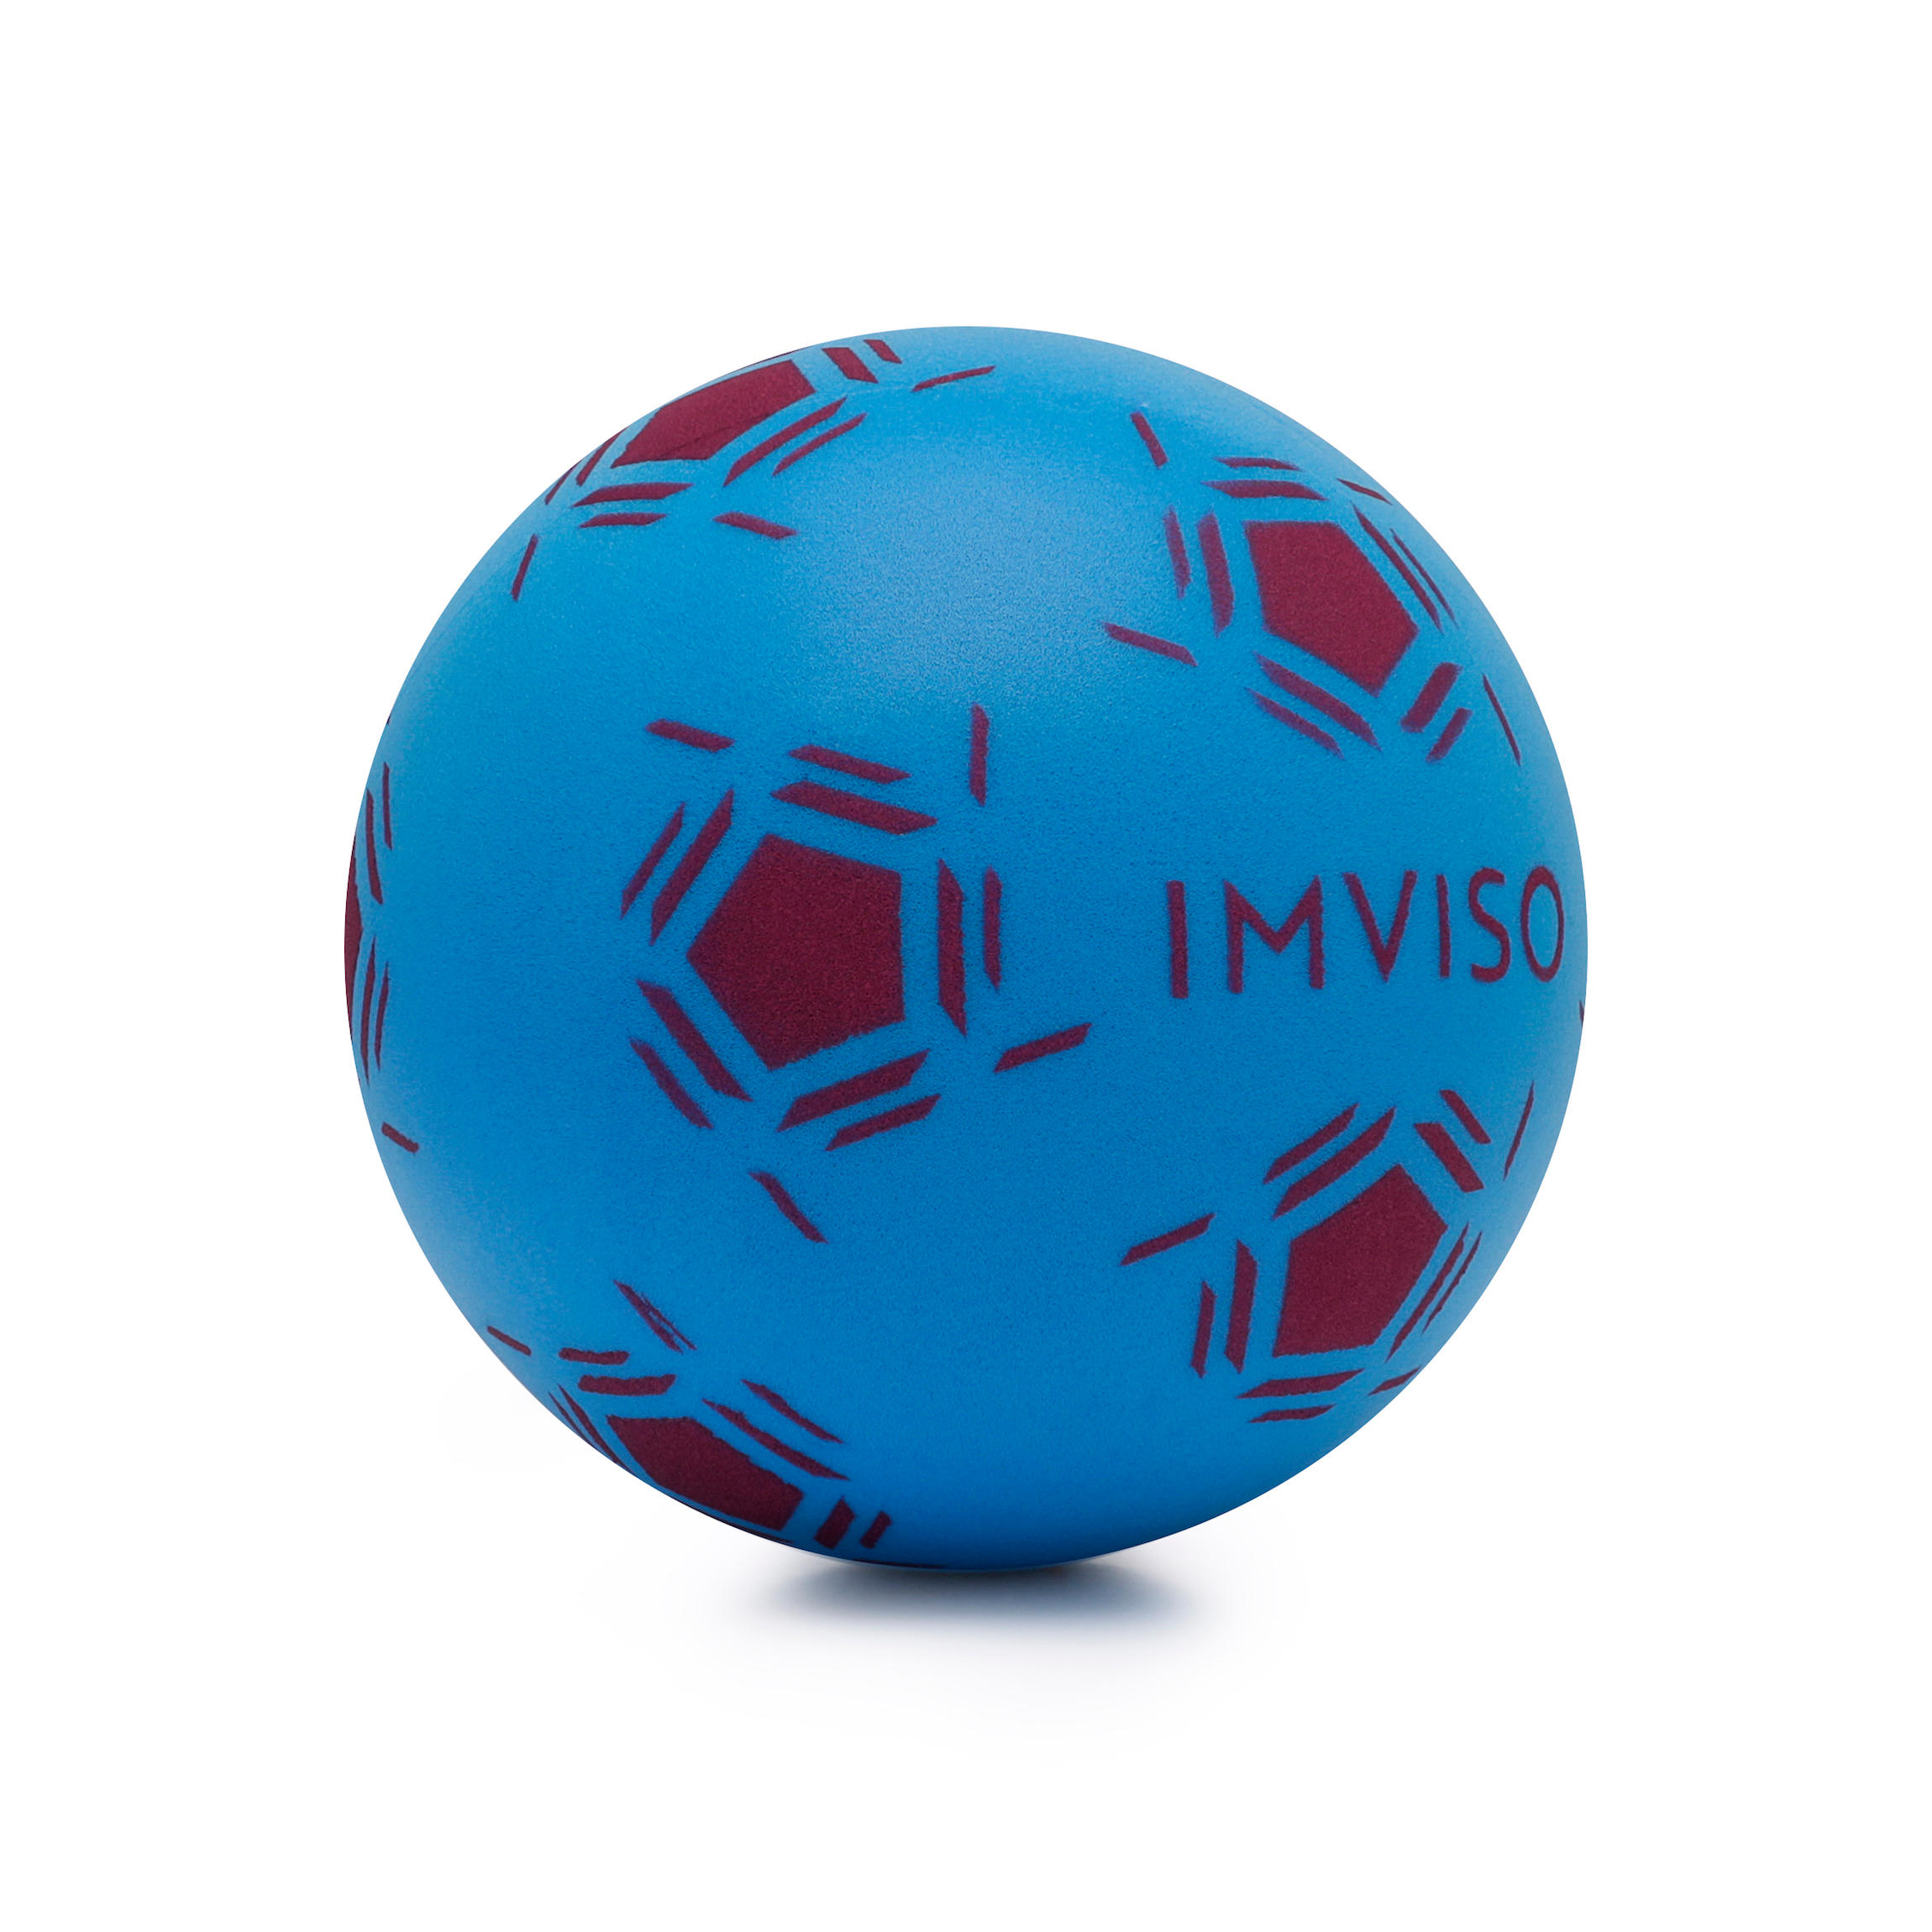 Argosy Toys Mousse de Ballon de Football Taille 5 